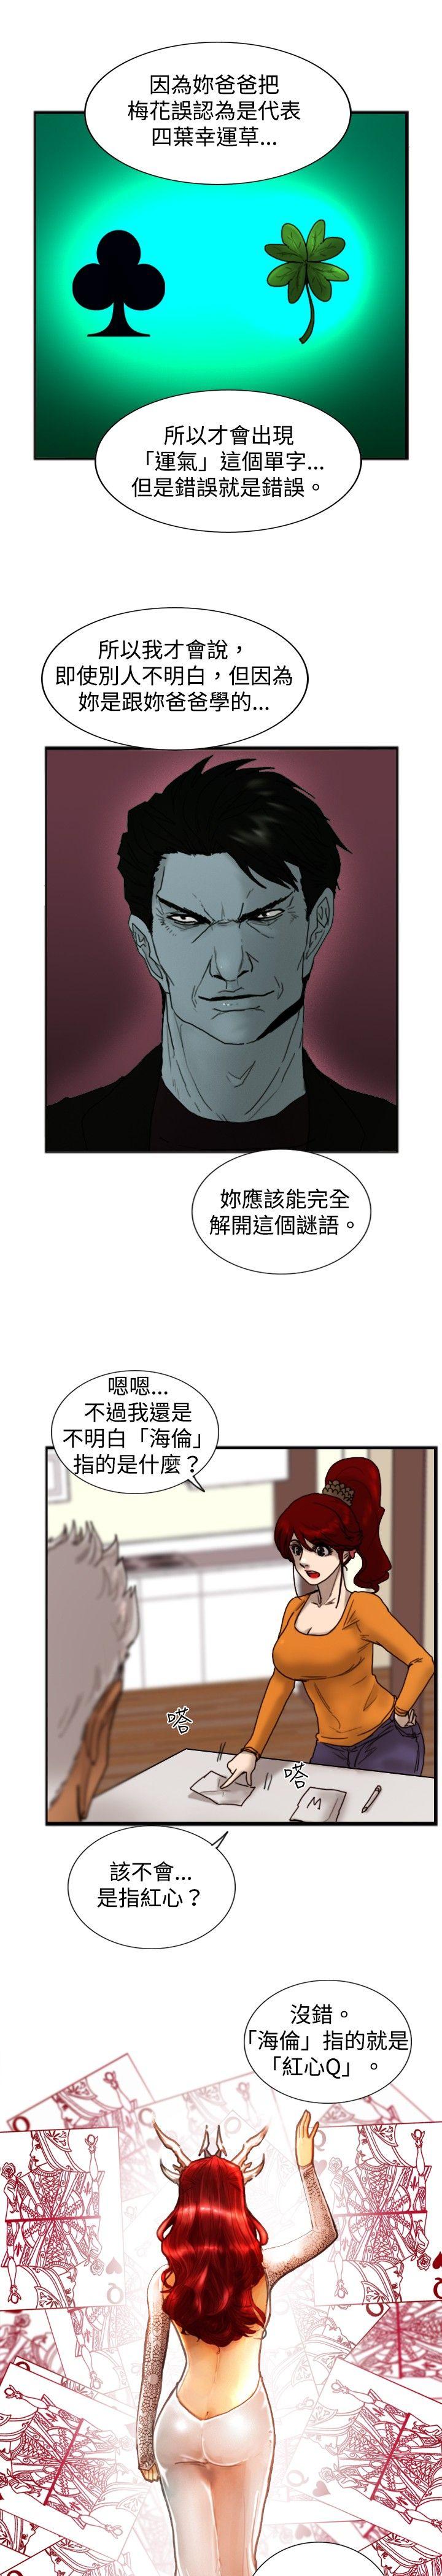 韩国污漫画 覺醒(完結) 第18话解读 13